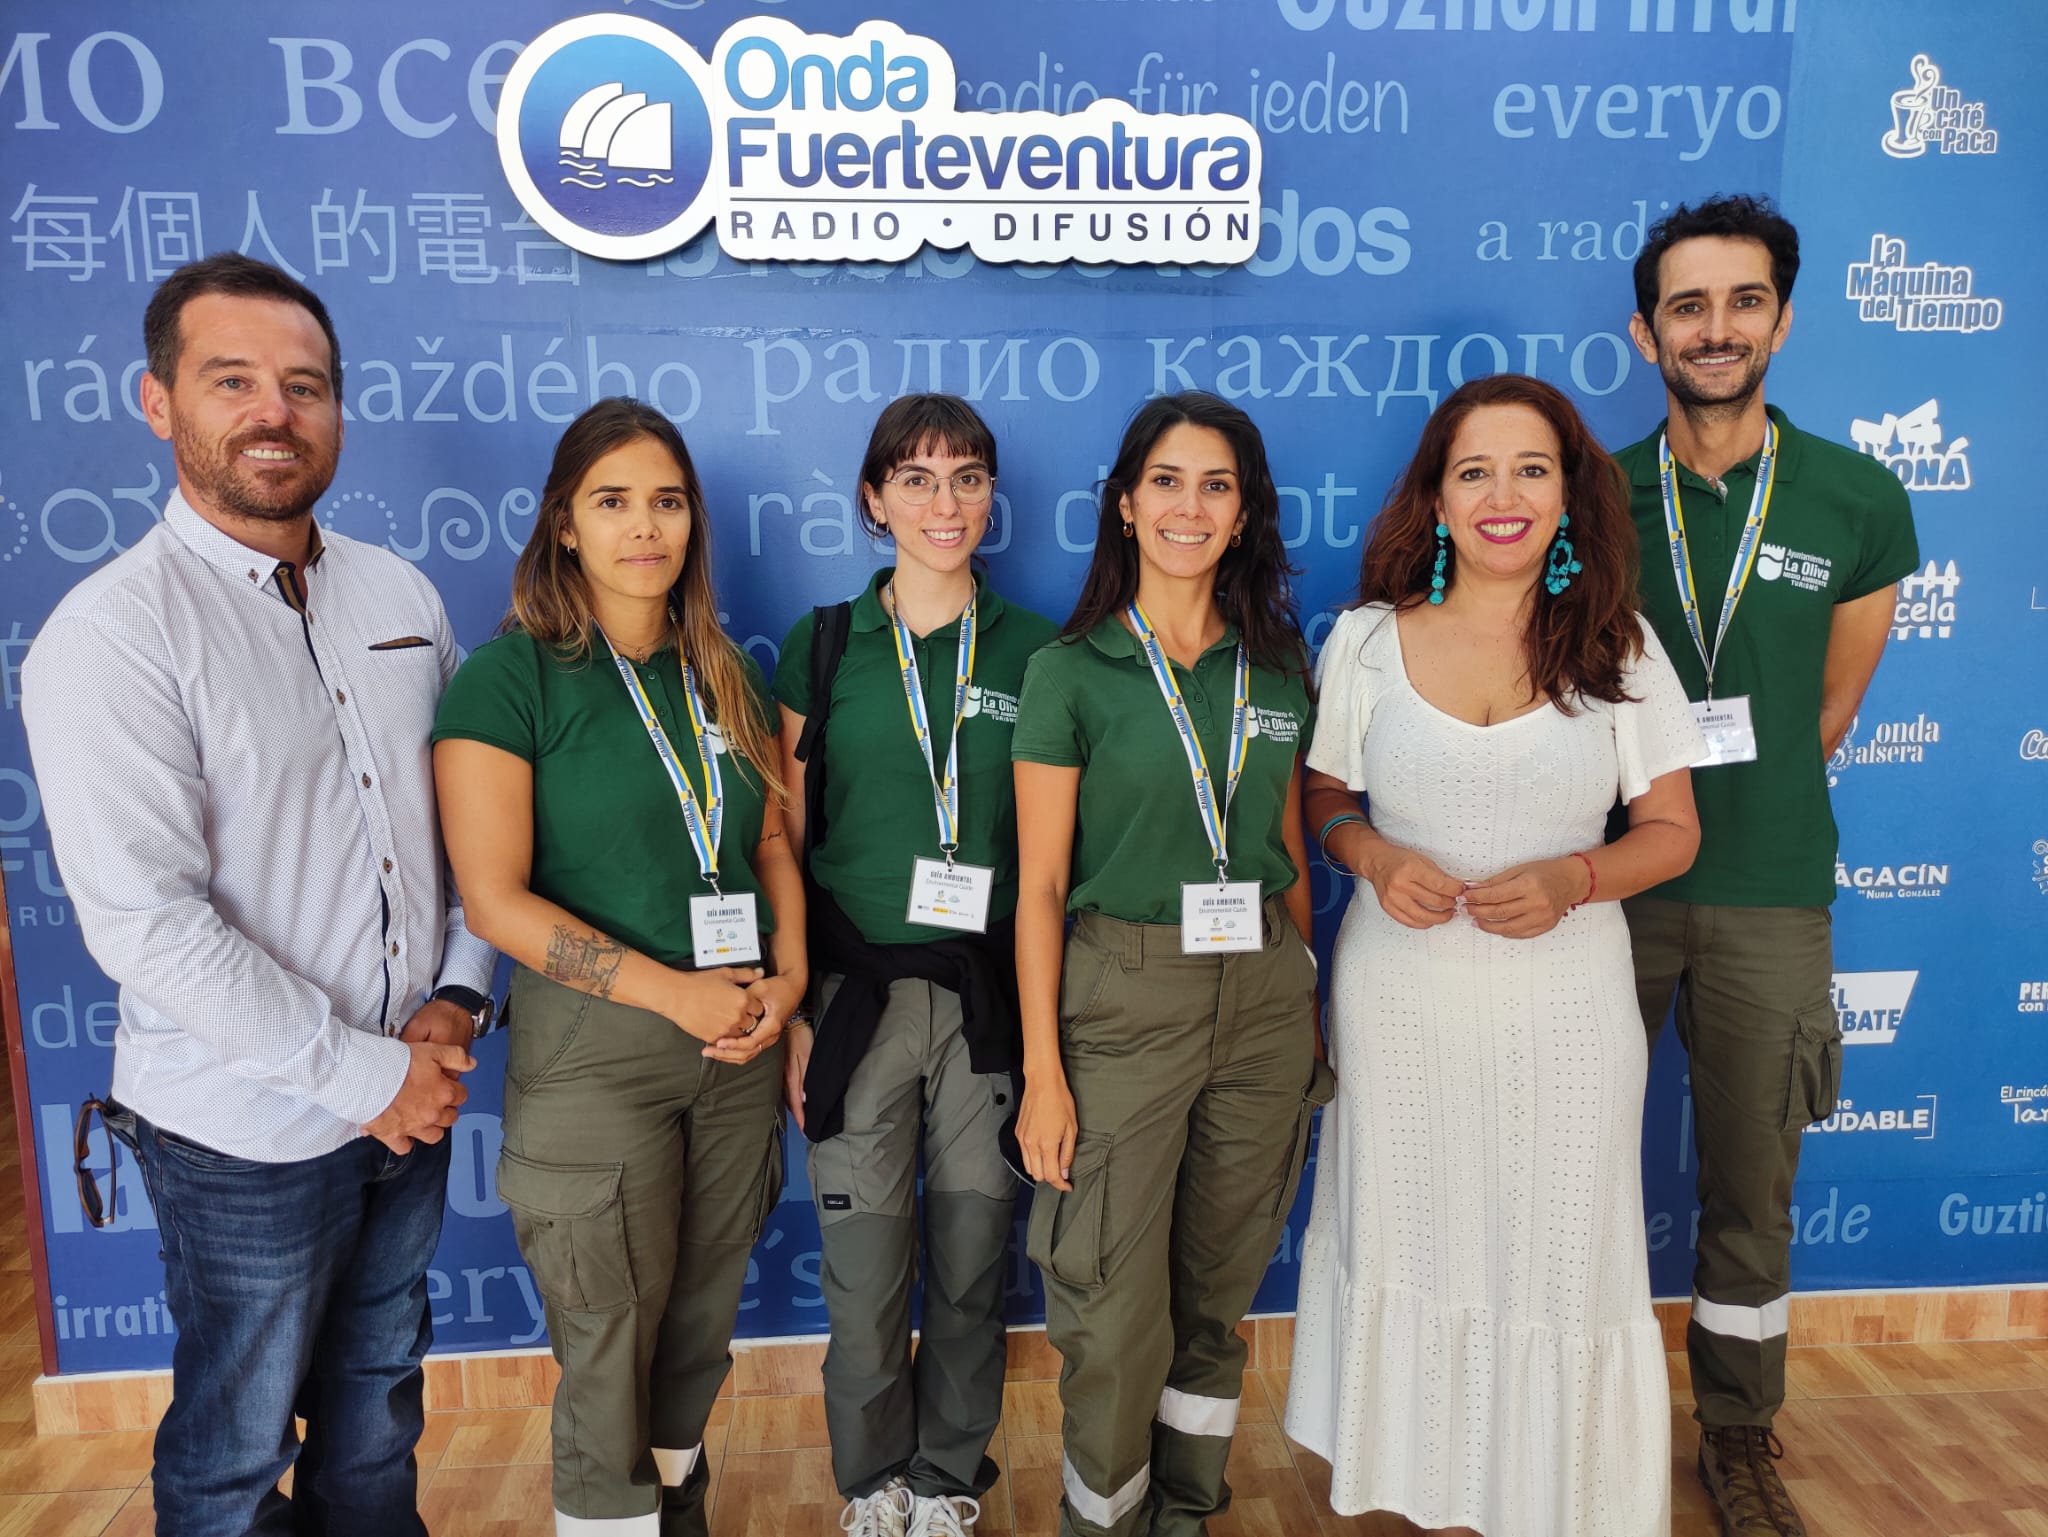 La Oliva consolida el equipo de Guías Ambientales que ayudan a respetar y cuidar el entorno – ondafuerteventura.es